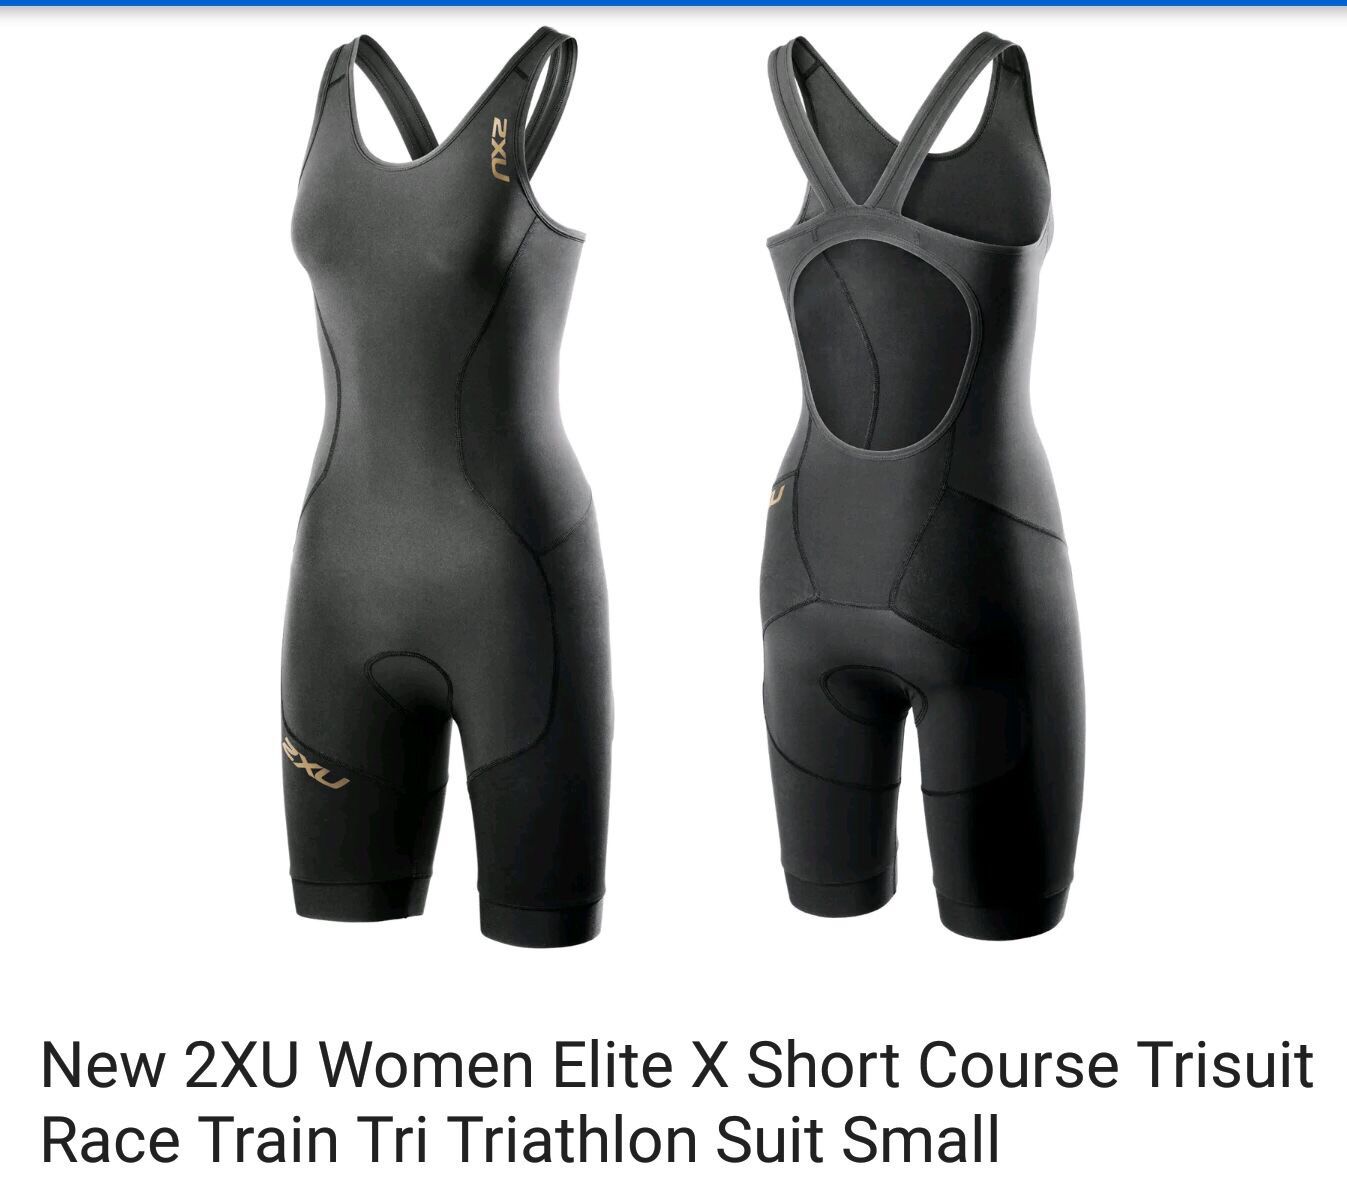 Triathlon suit $35